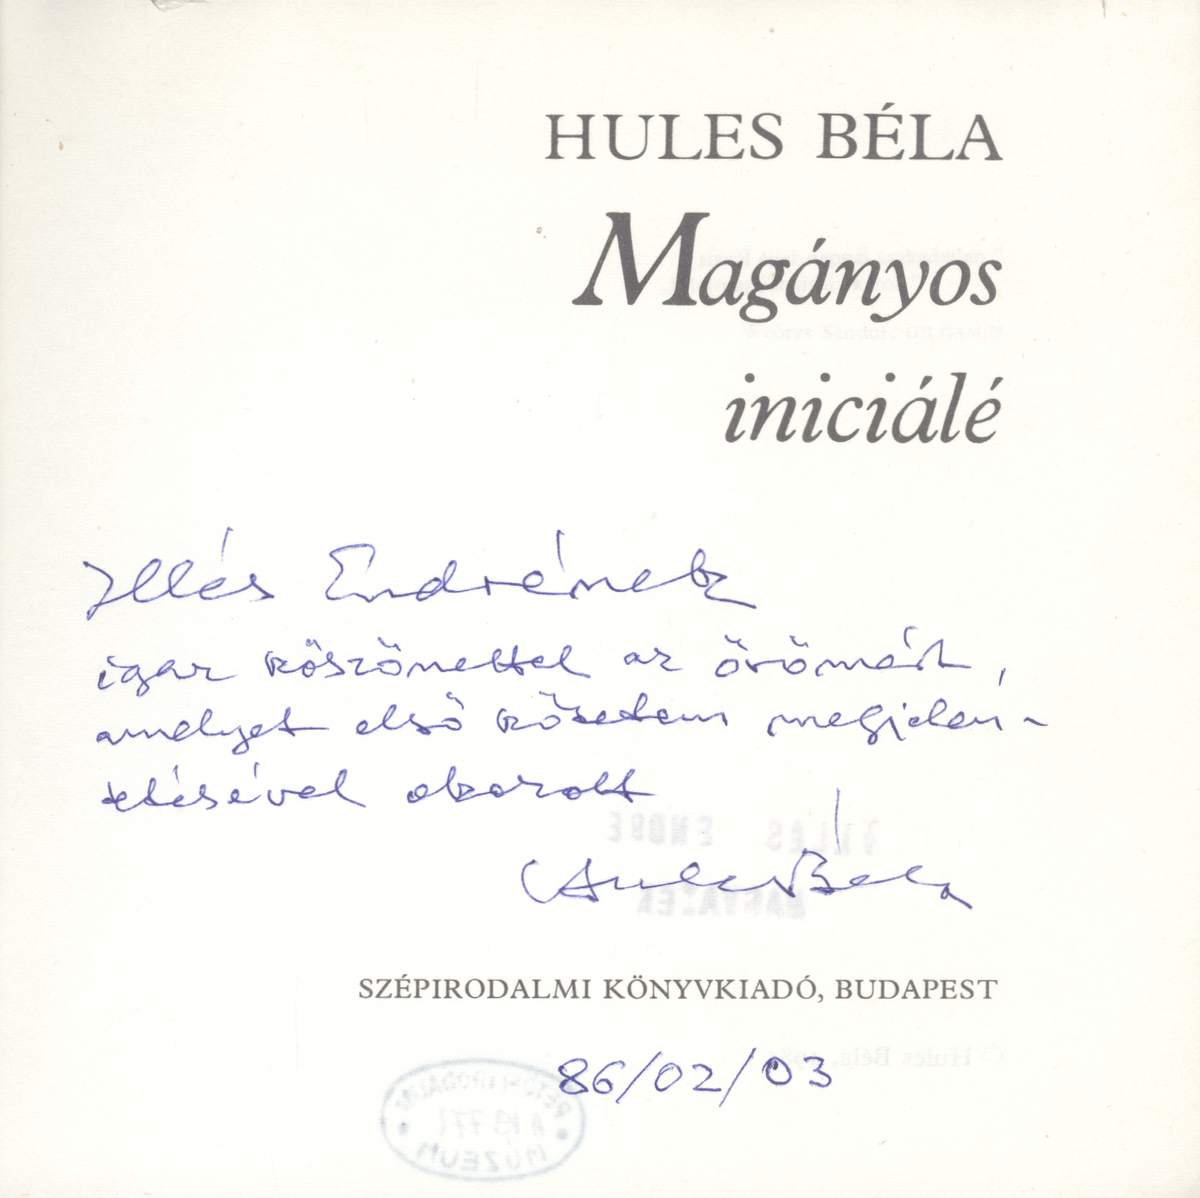 Hules Béla: Magányos iniciálé, Hules Béla | PLM Collection